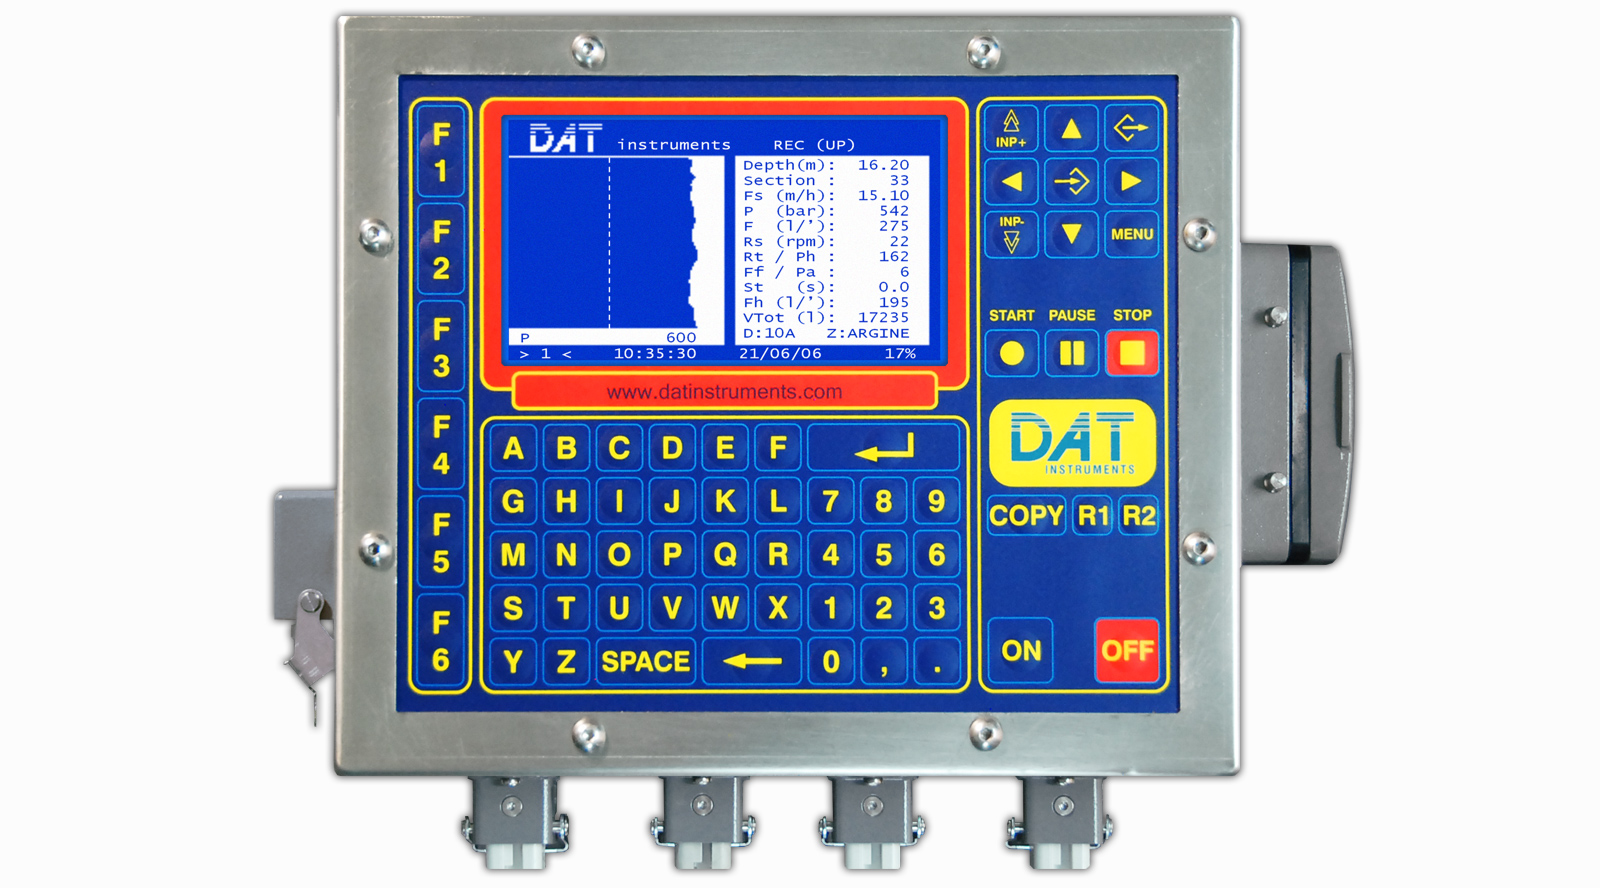 DAT instruments, JET 4000 AME - J, datalogger para Jet grouting, Perforaciónes, DAC test, CFA, Deep mixing, Soil mixing, Vibroflotación